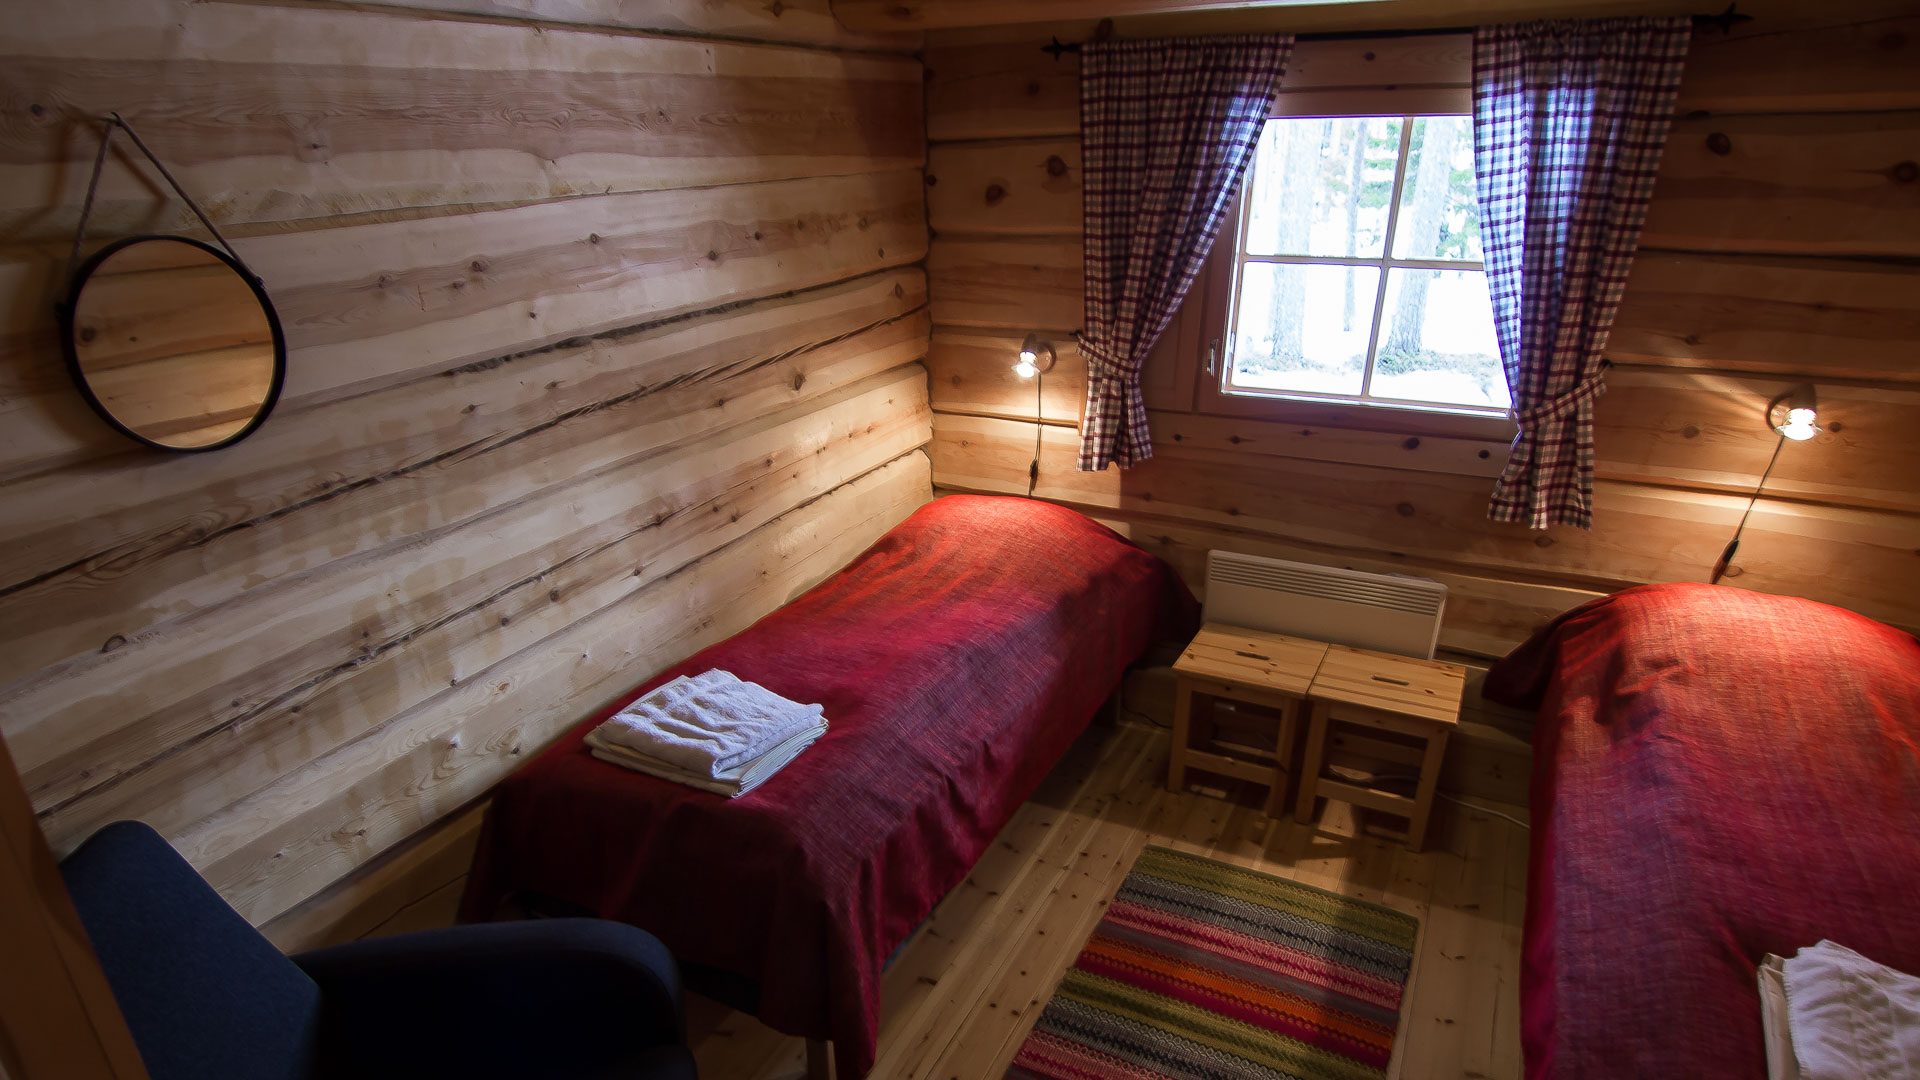 Accommodation / Aurora rooms, Arctic Circle Wilderness Resort, Rovaniemi, Villi Pohjola / Wild Nordic Finland @wildnordicfinland